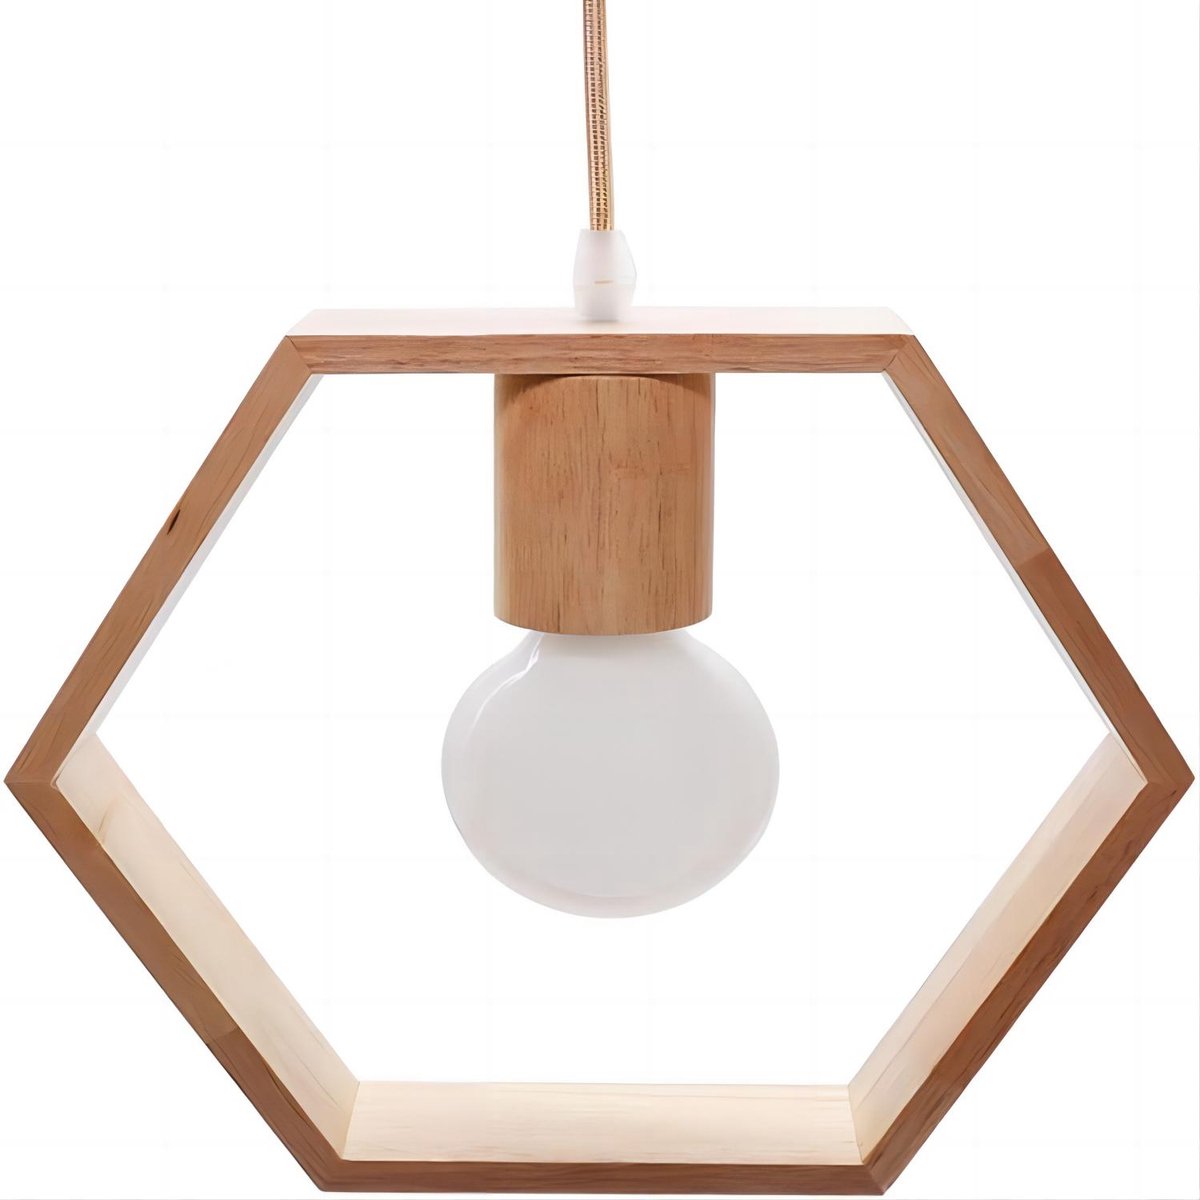 Goeco Hanglamp - 26cm - Medium - Houten - Zeshoekige Geometrische Hanglampen - Zonder Lamp